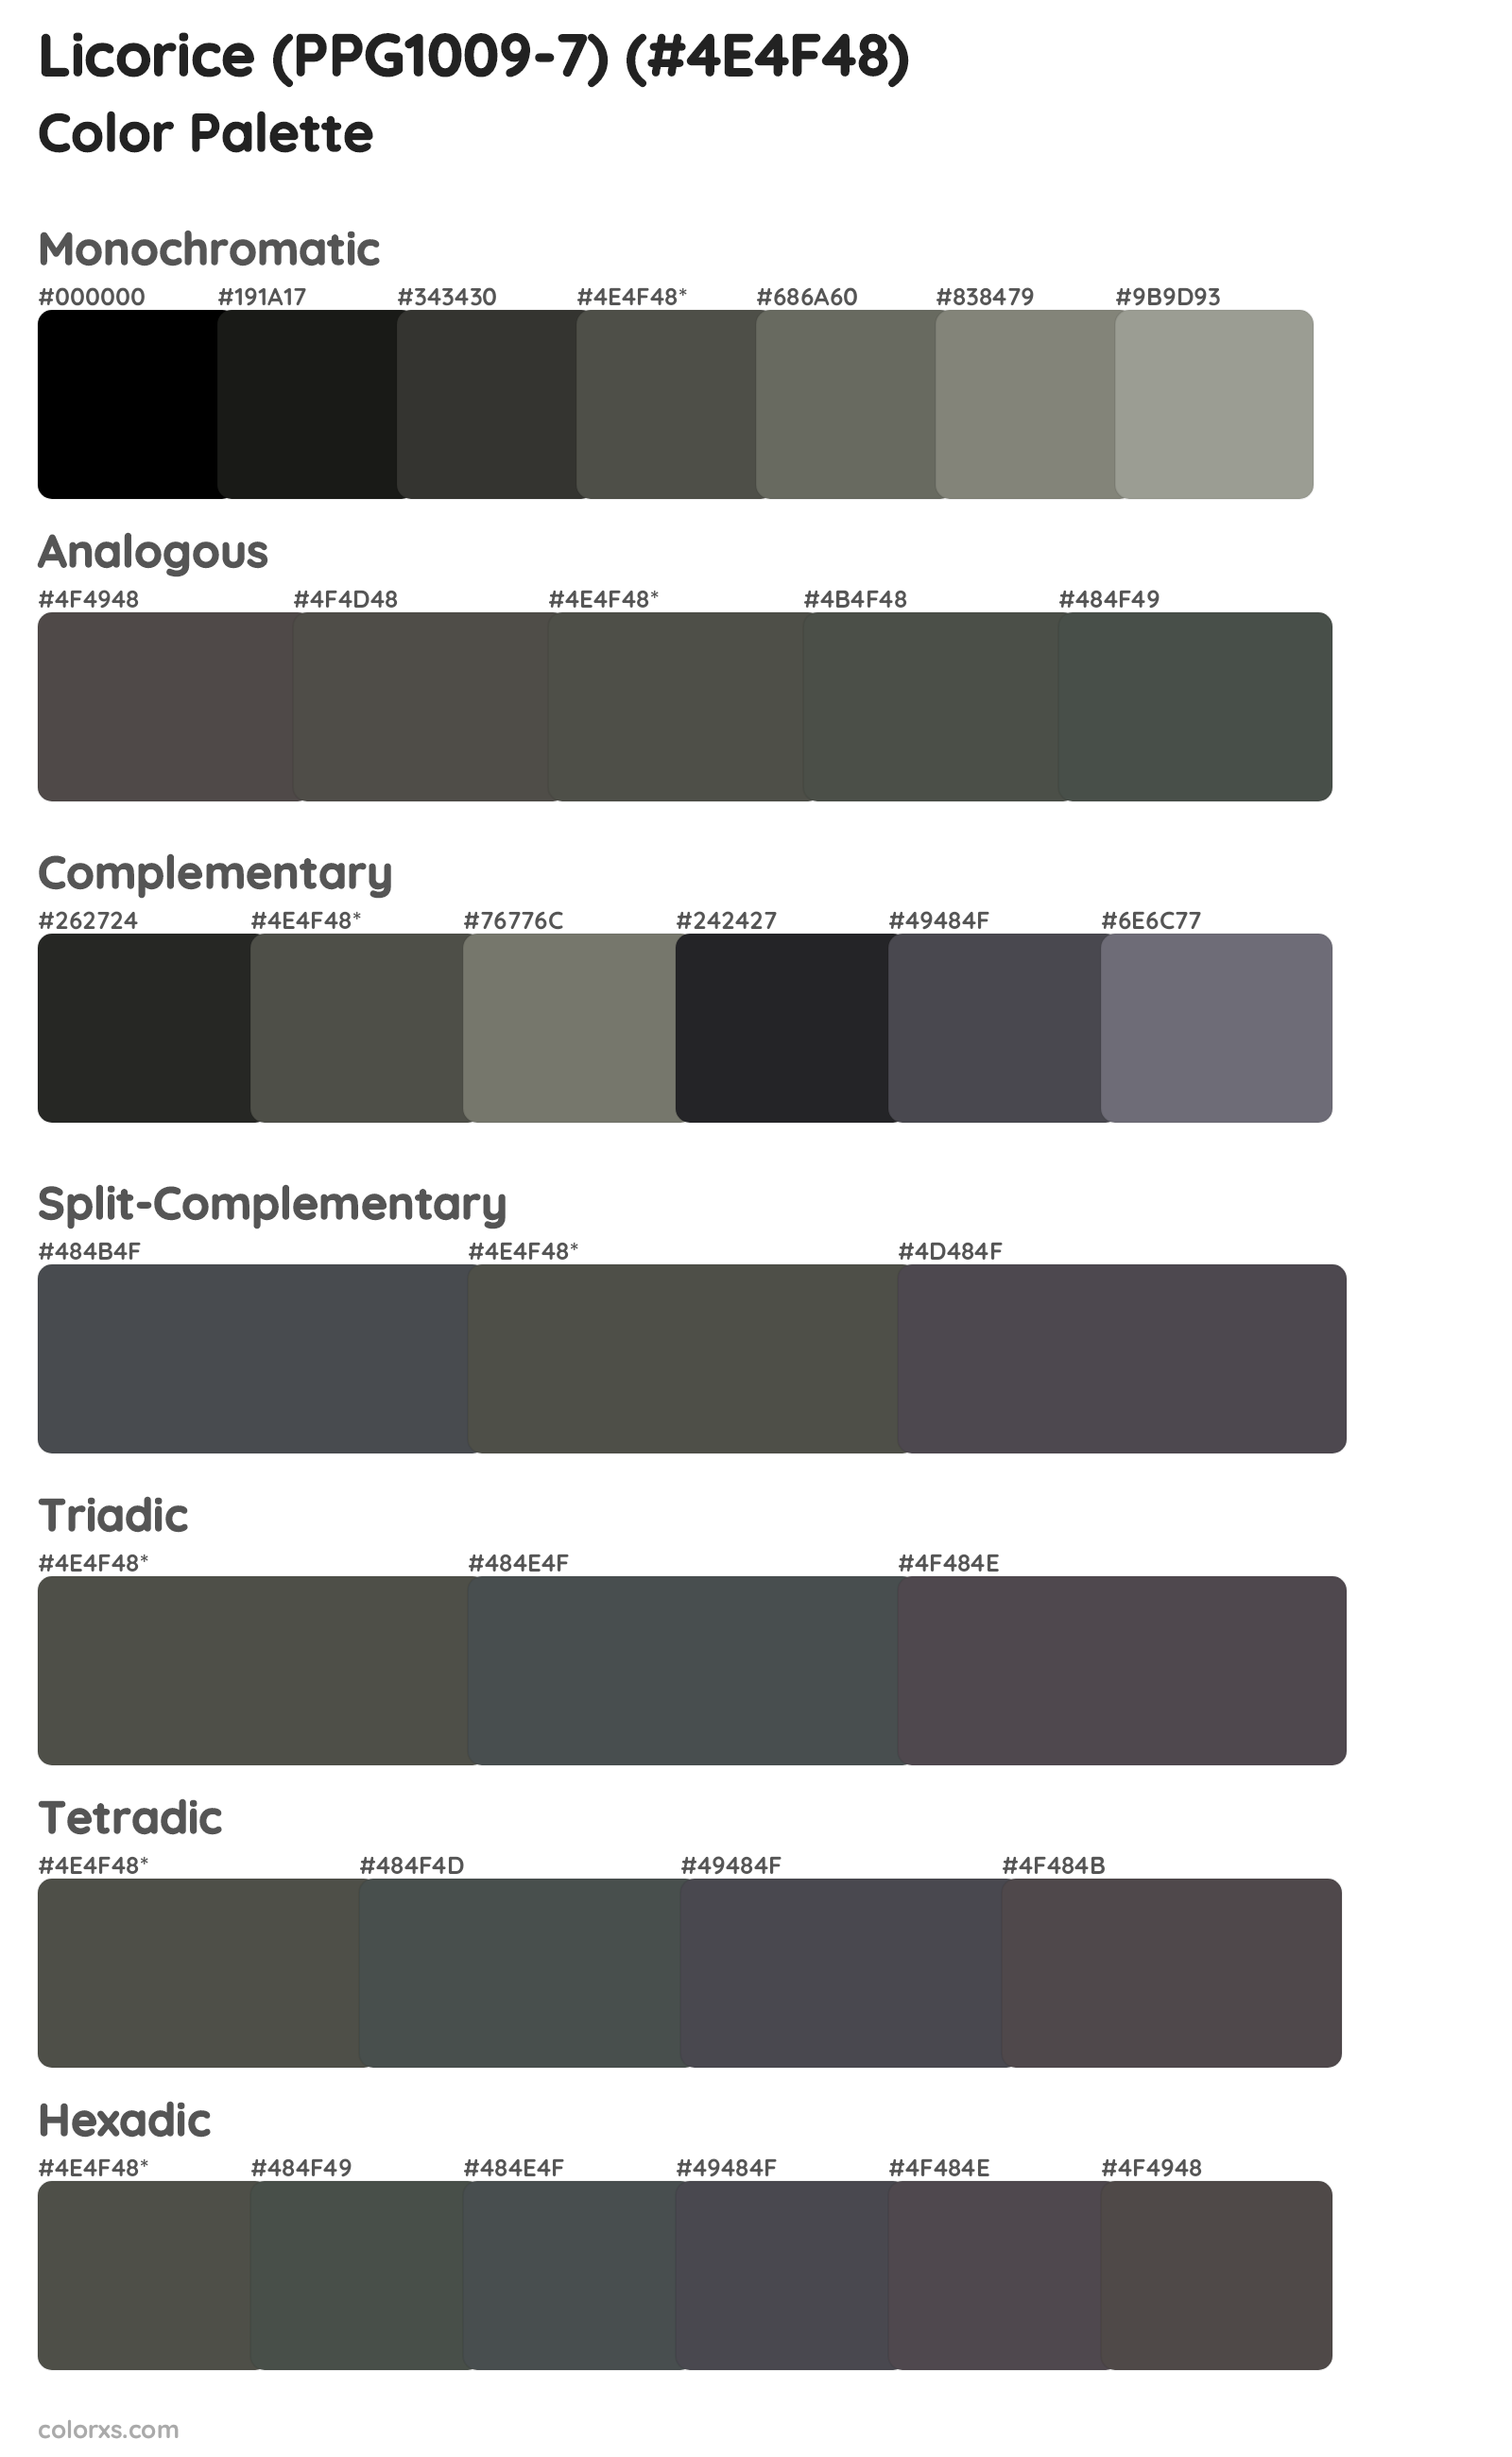 Licorice (PPG1009-7) Color Scheme Palettes